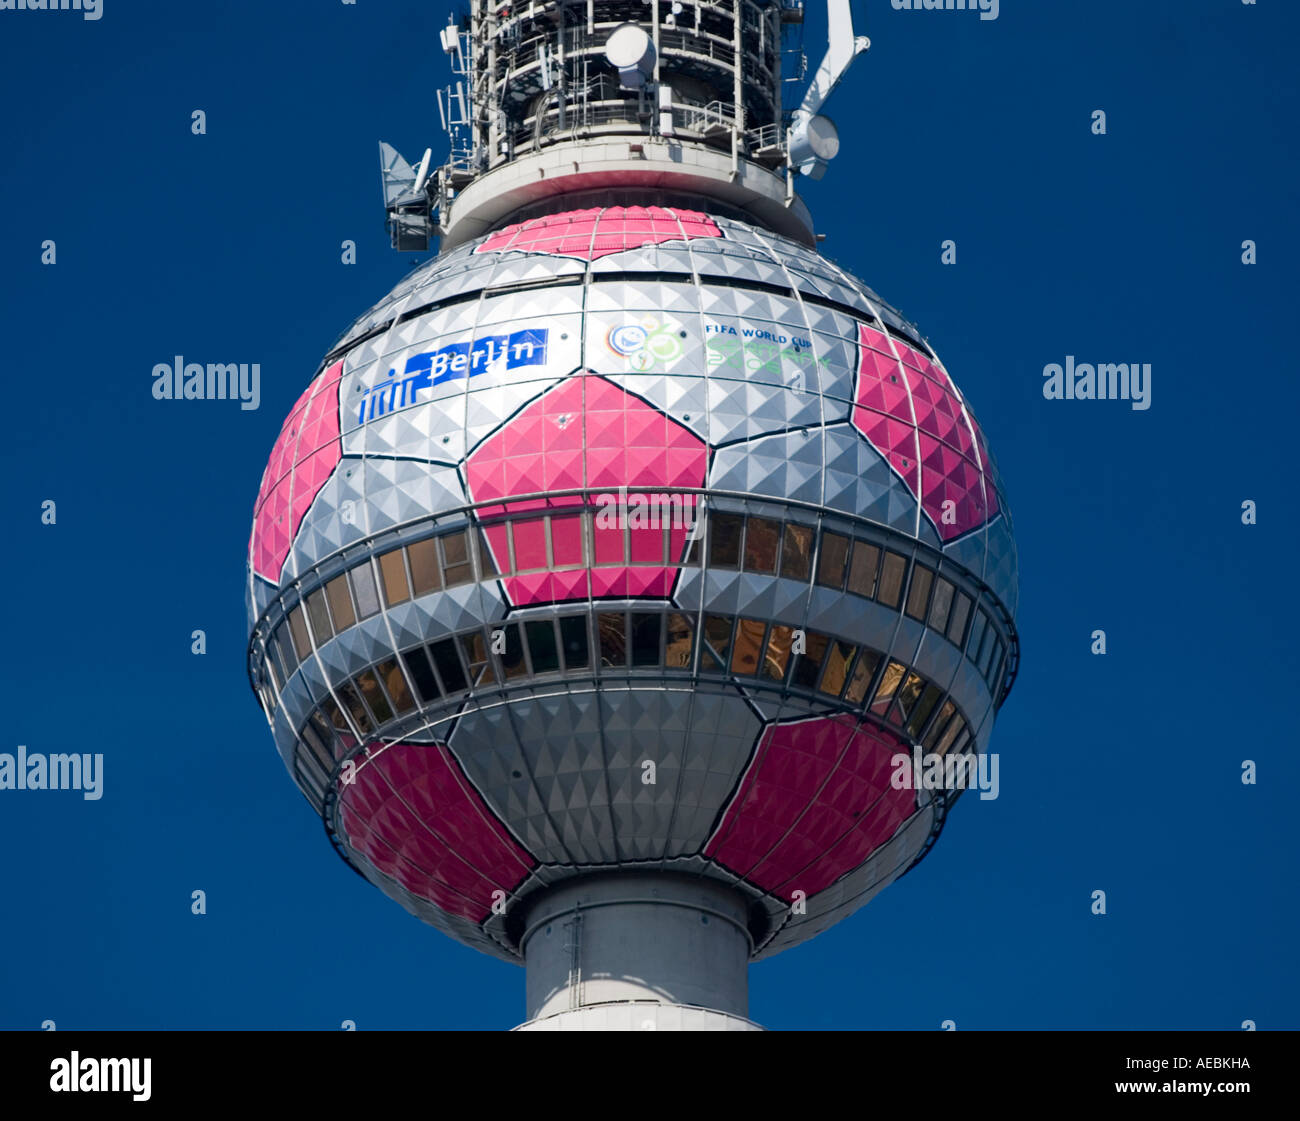 Détail de la tour de télévision ou fensehturm à Alexanderplatz Berlin pendant la Coupe de Monde 2006 avec le football sur sphère design Banque D'Images